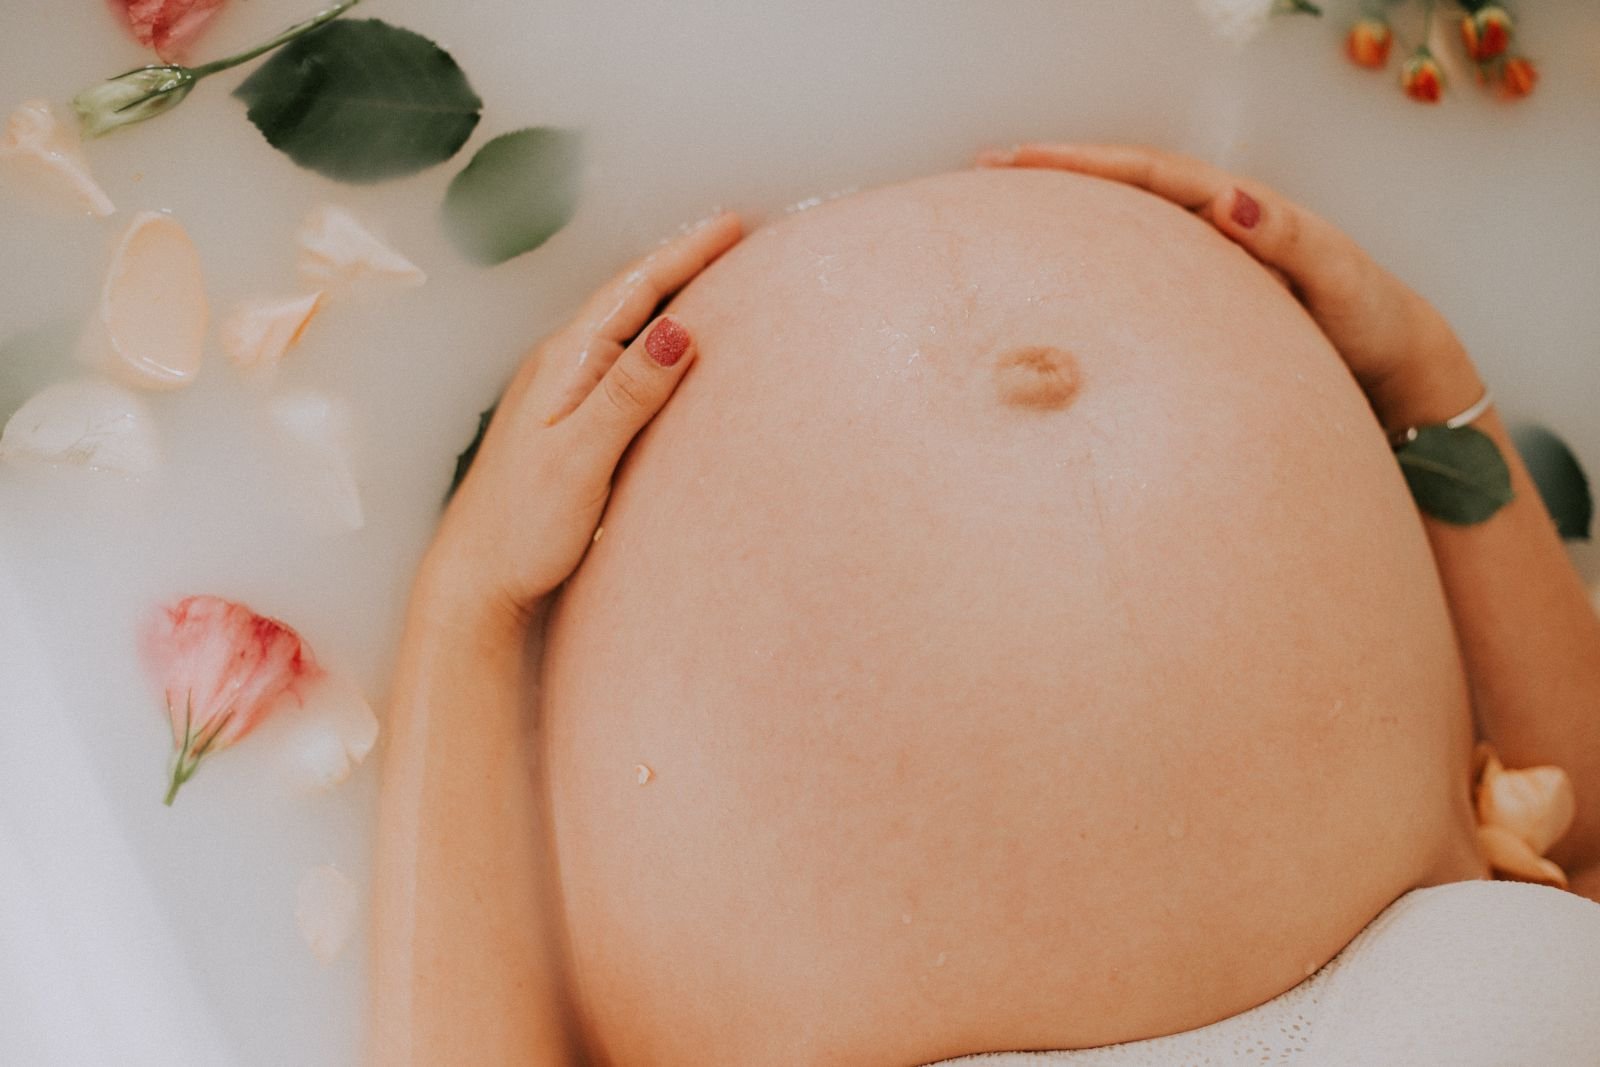 Mulher grávida sentada em uma banheira